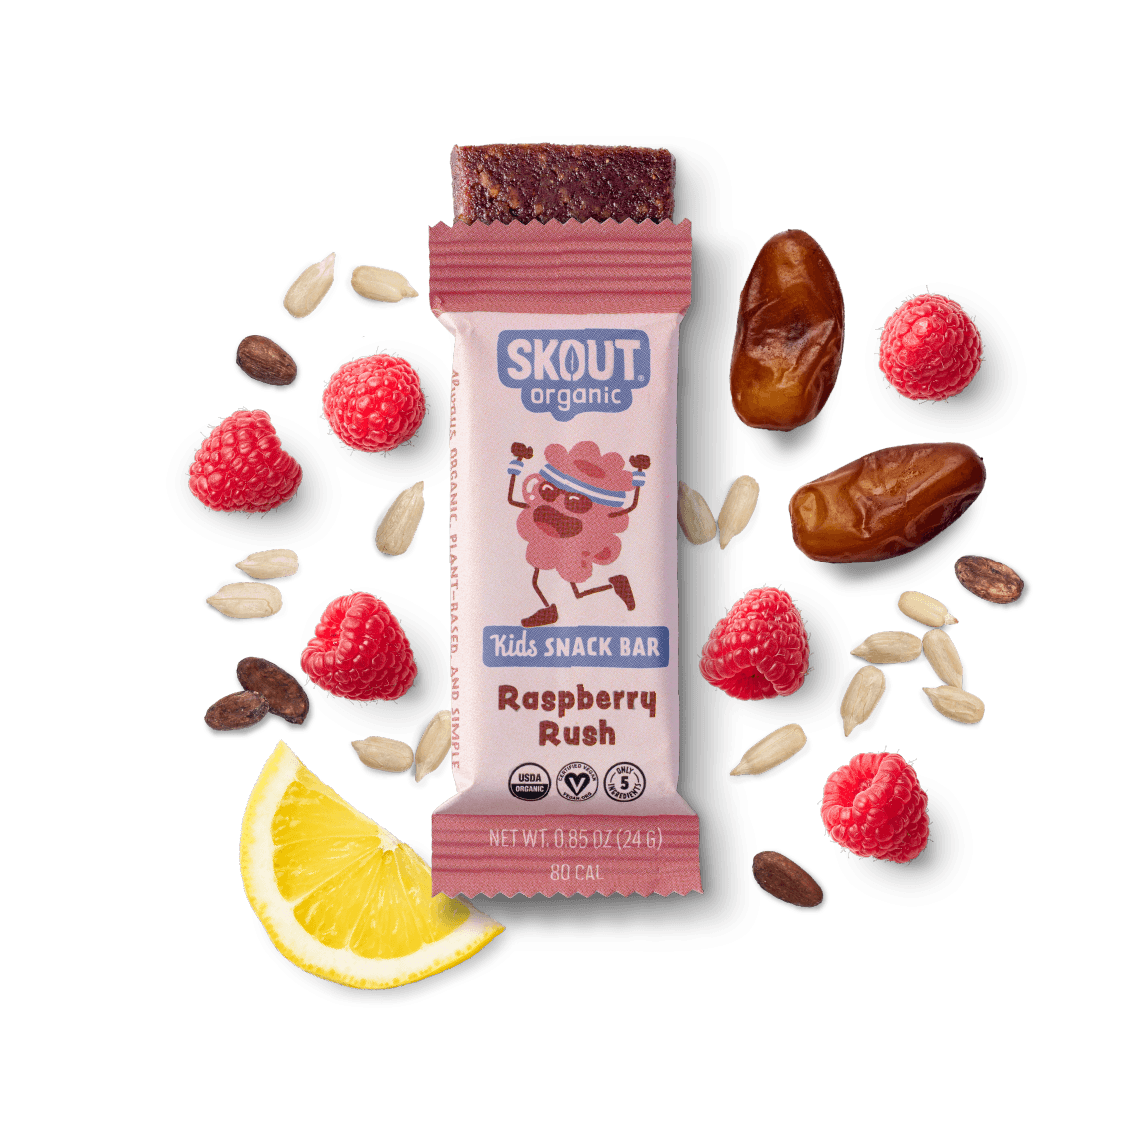 Raspberry Rush Kids Bar Build Your Own Box - Single Bar Skout Organic Bar 